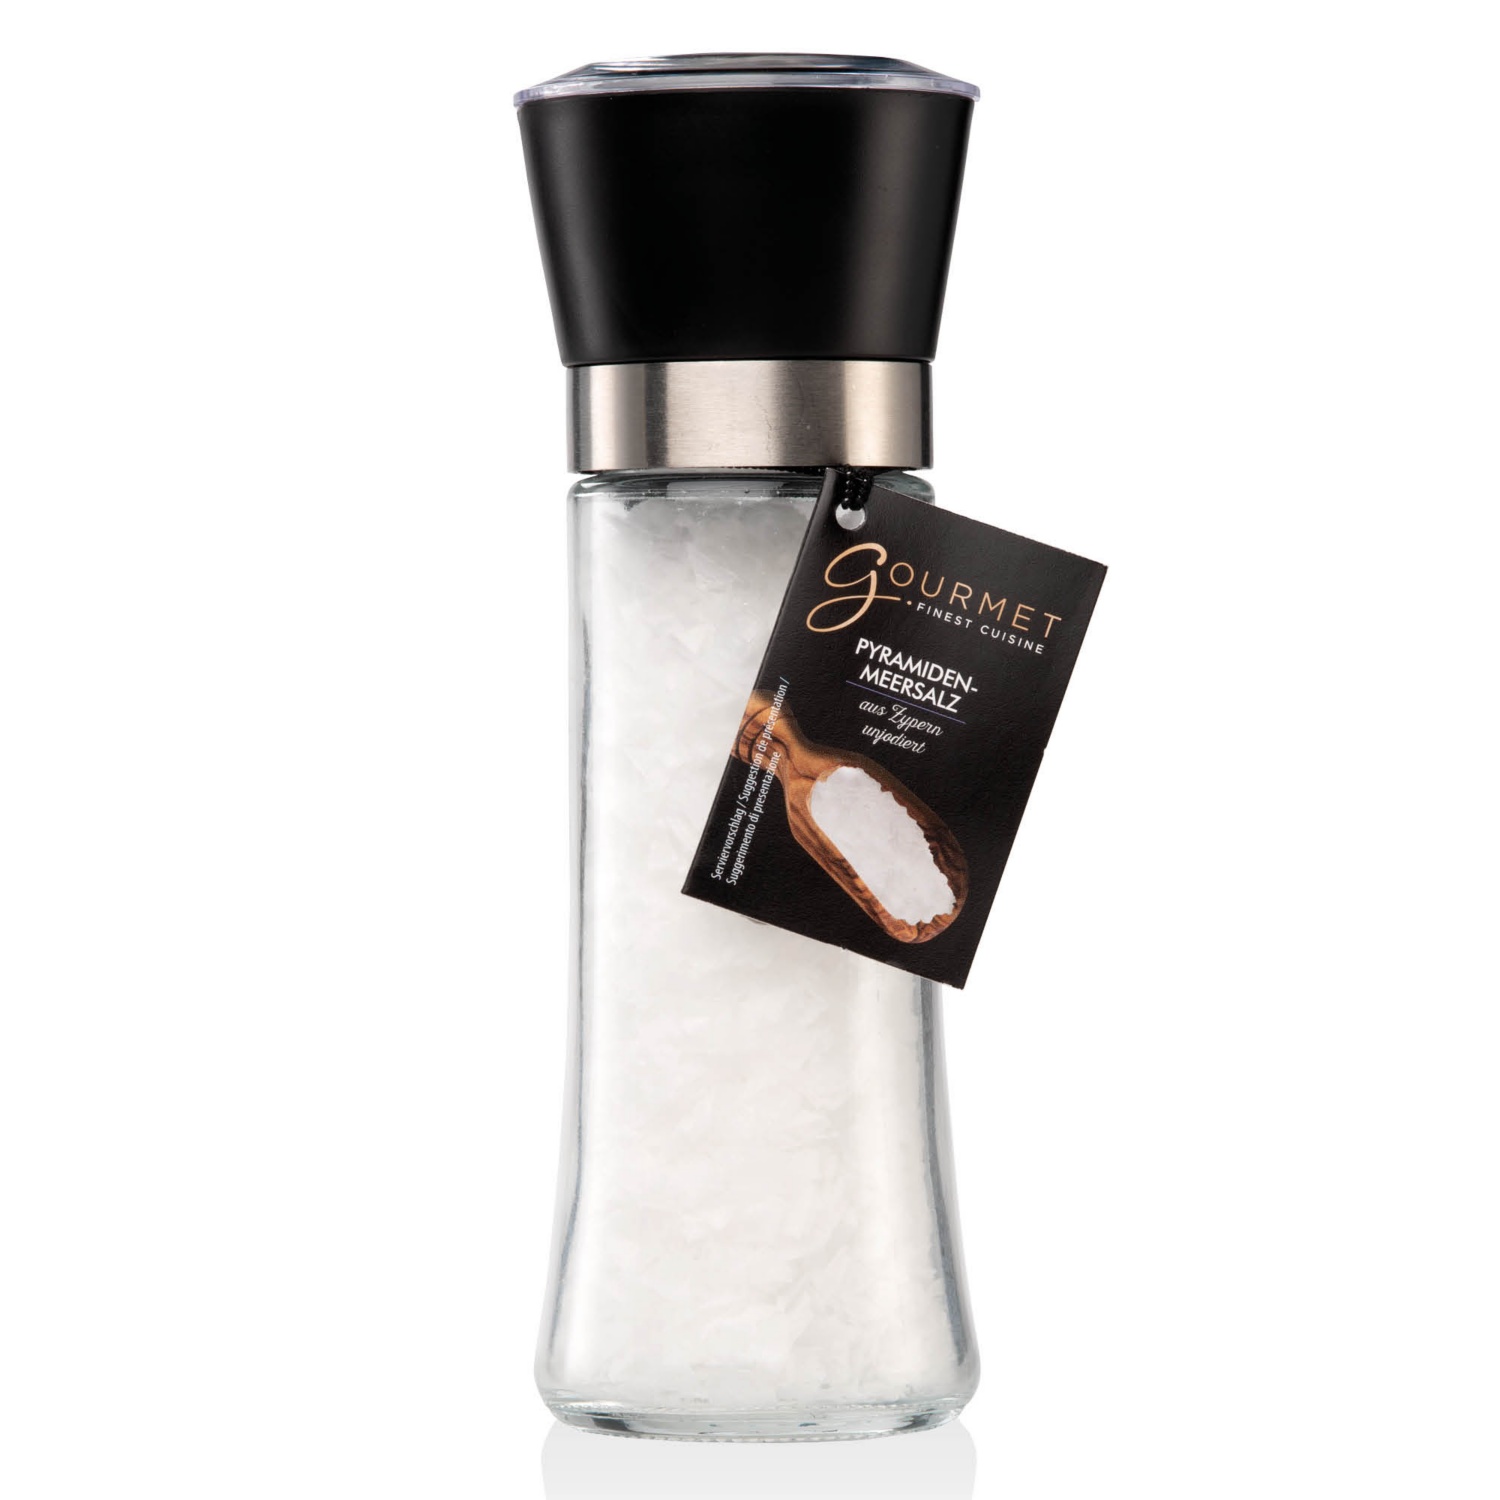 GOURMET Sóőrlő, Piramis tengeri só, 85 g